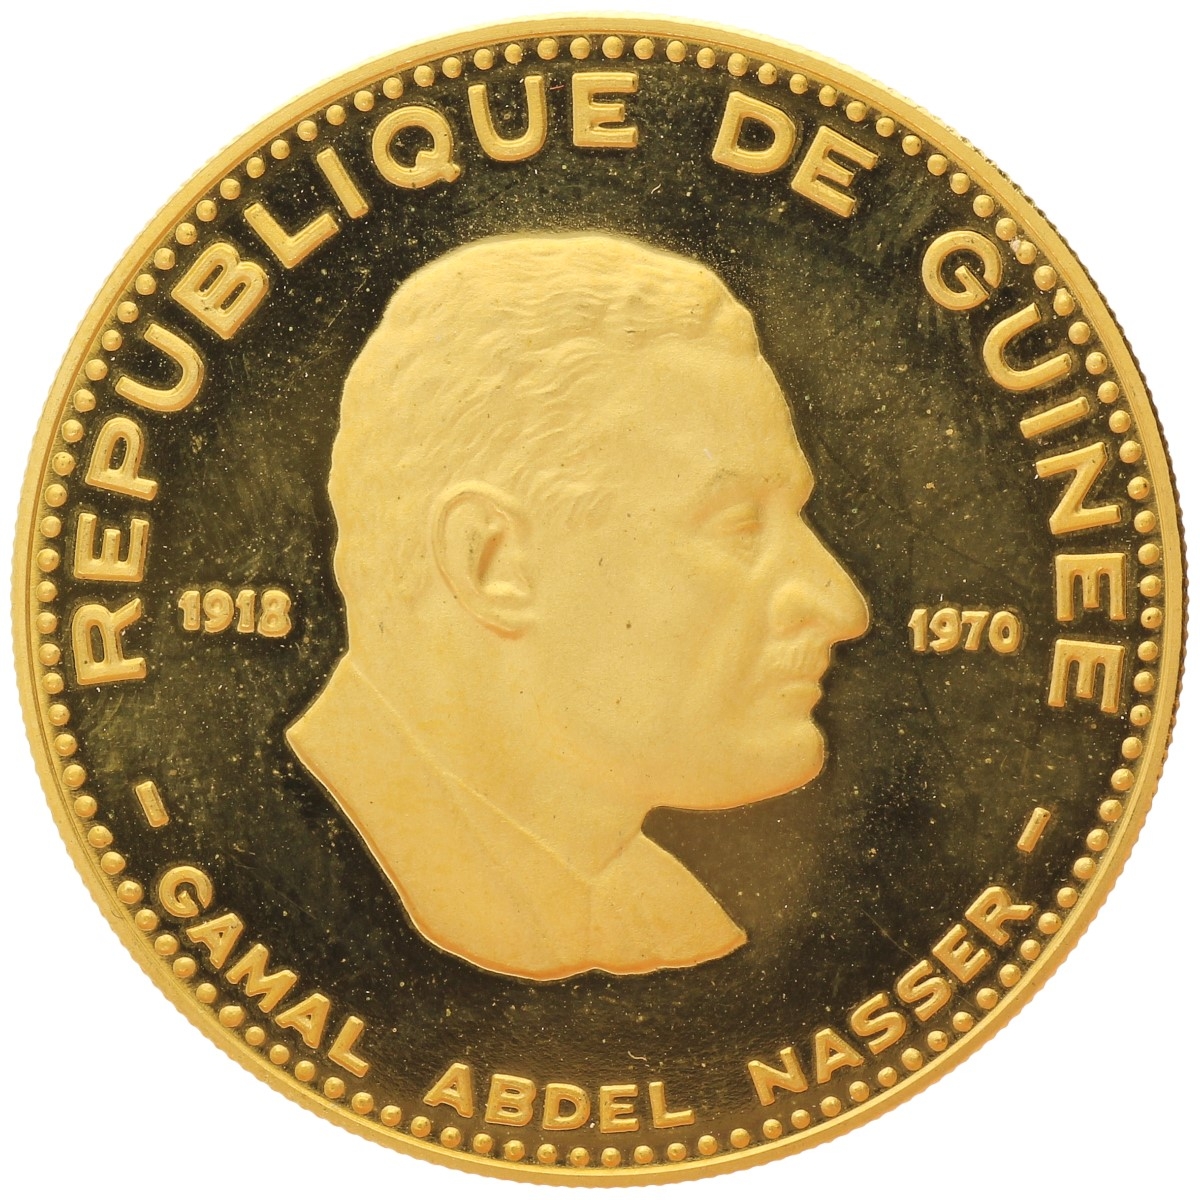 Guinea - 5000 francs - 1970 - Nasser